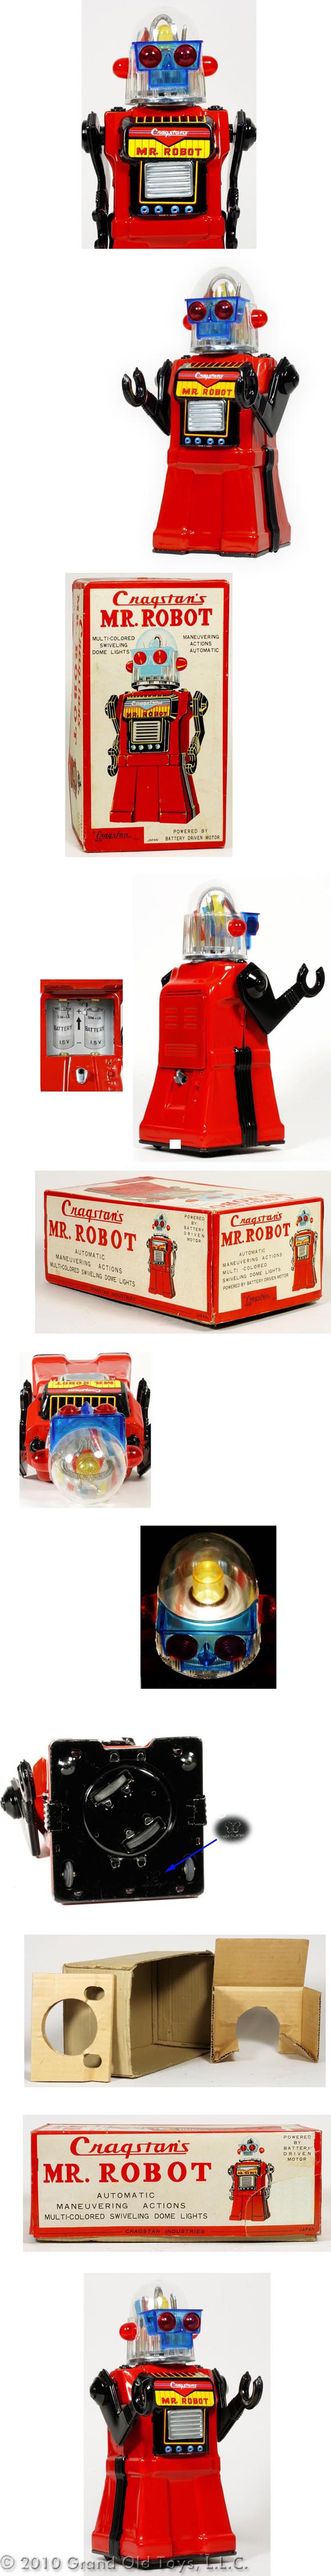 c.1960 Yonezawa, Mr. Robot In Original Box